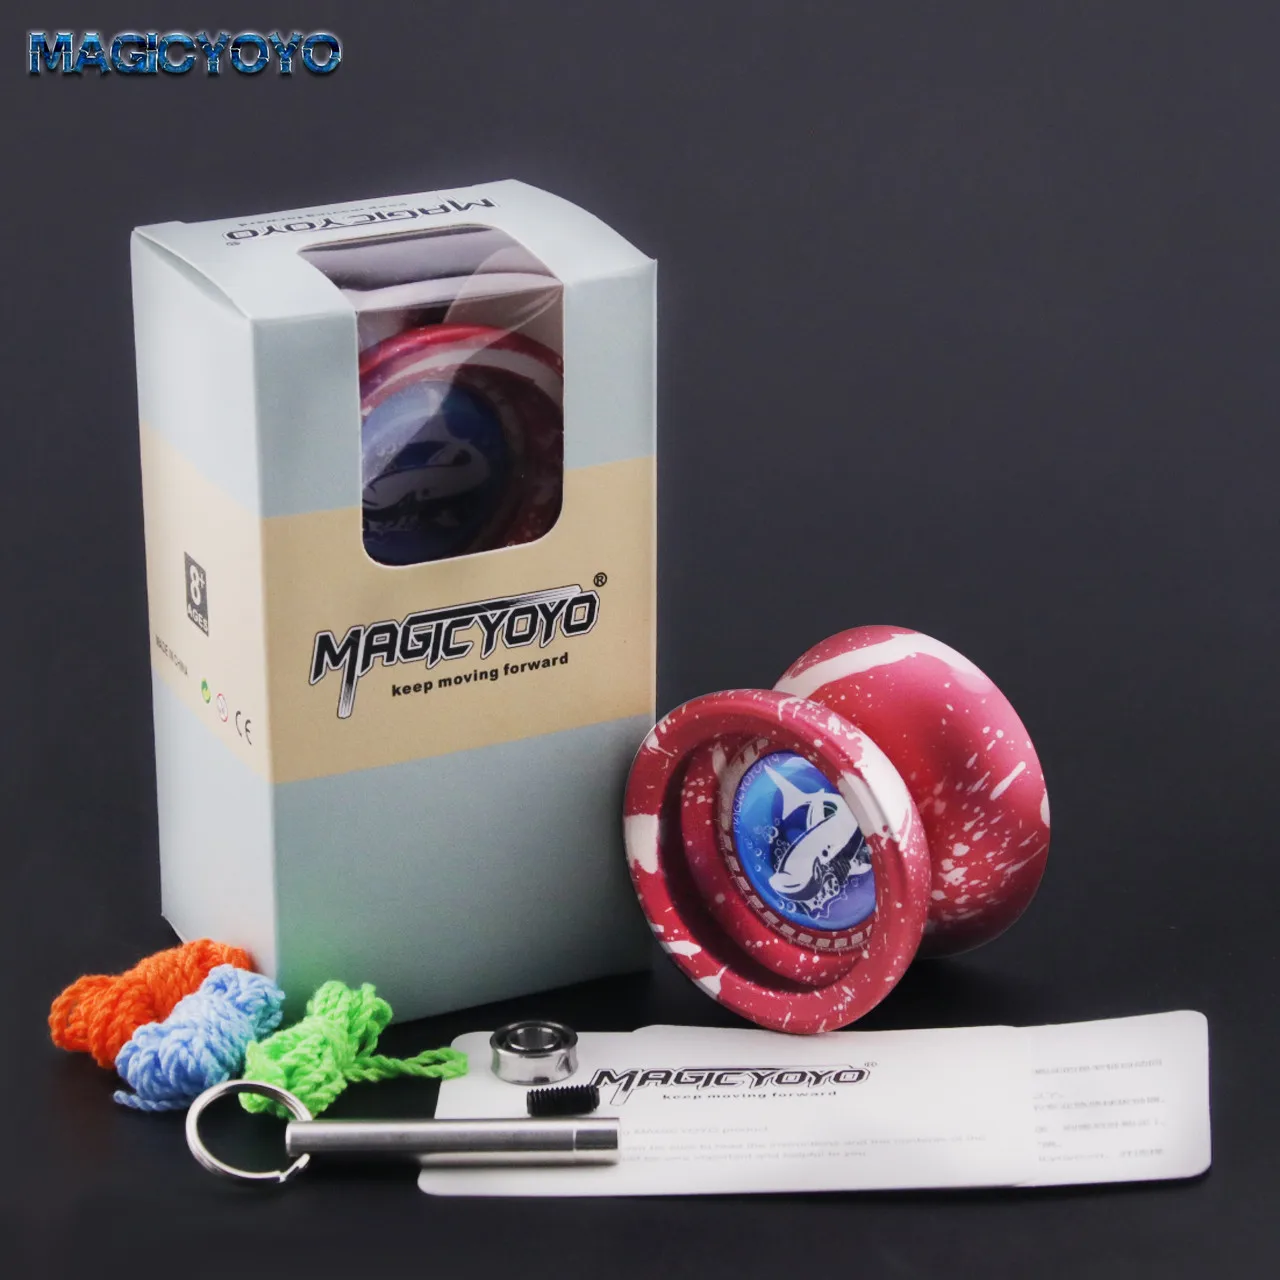 Magicyoyo T9 профессиональные детские игрушки матовая поверхность отзывчивая и не реагирующая сменная с наклейками йо-йо мяч классические игрушки